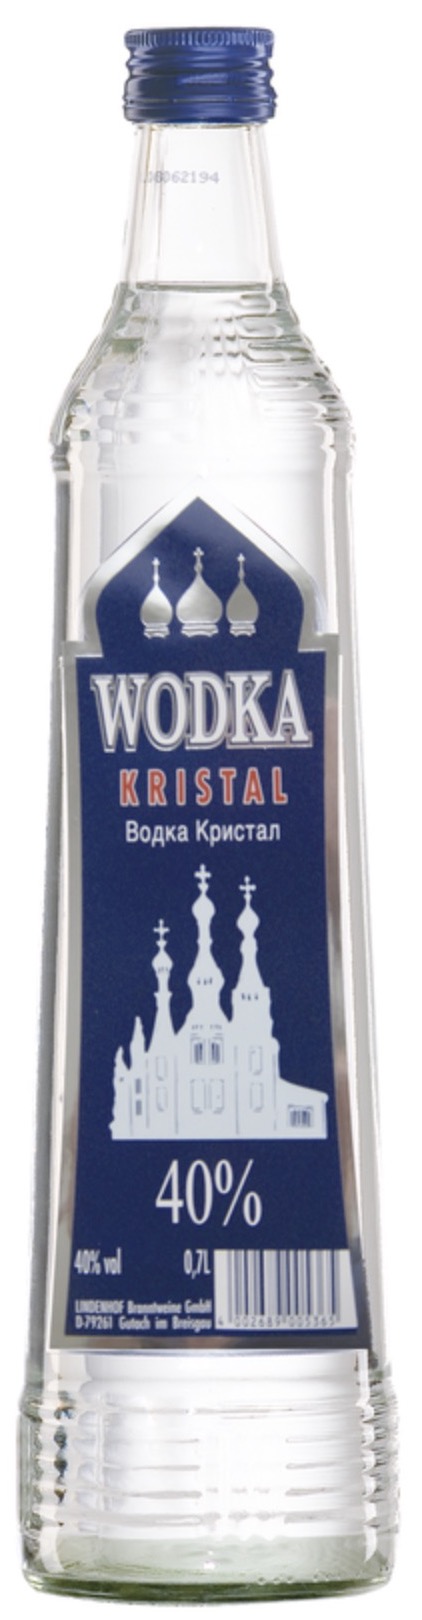 Wodka Kristal 40% vol. 0,7L